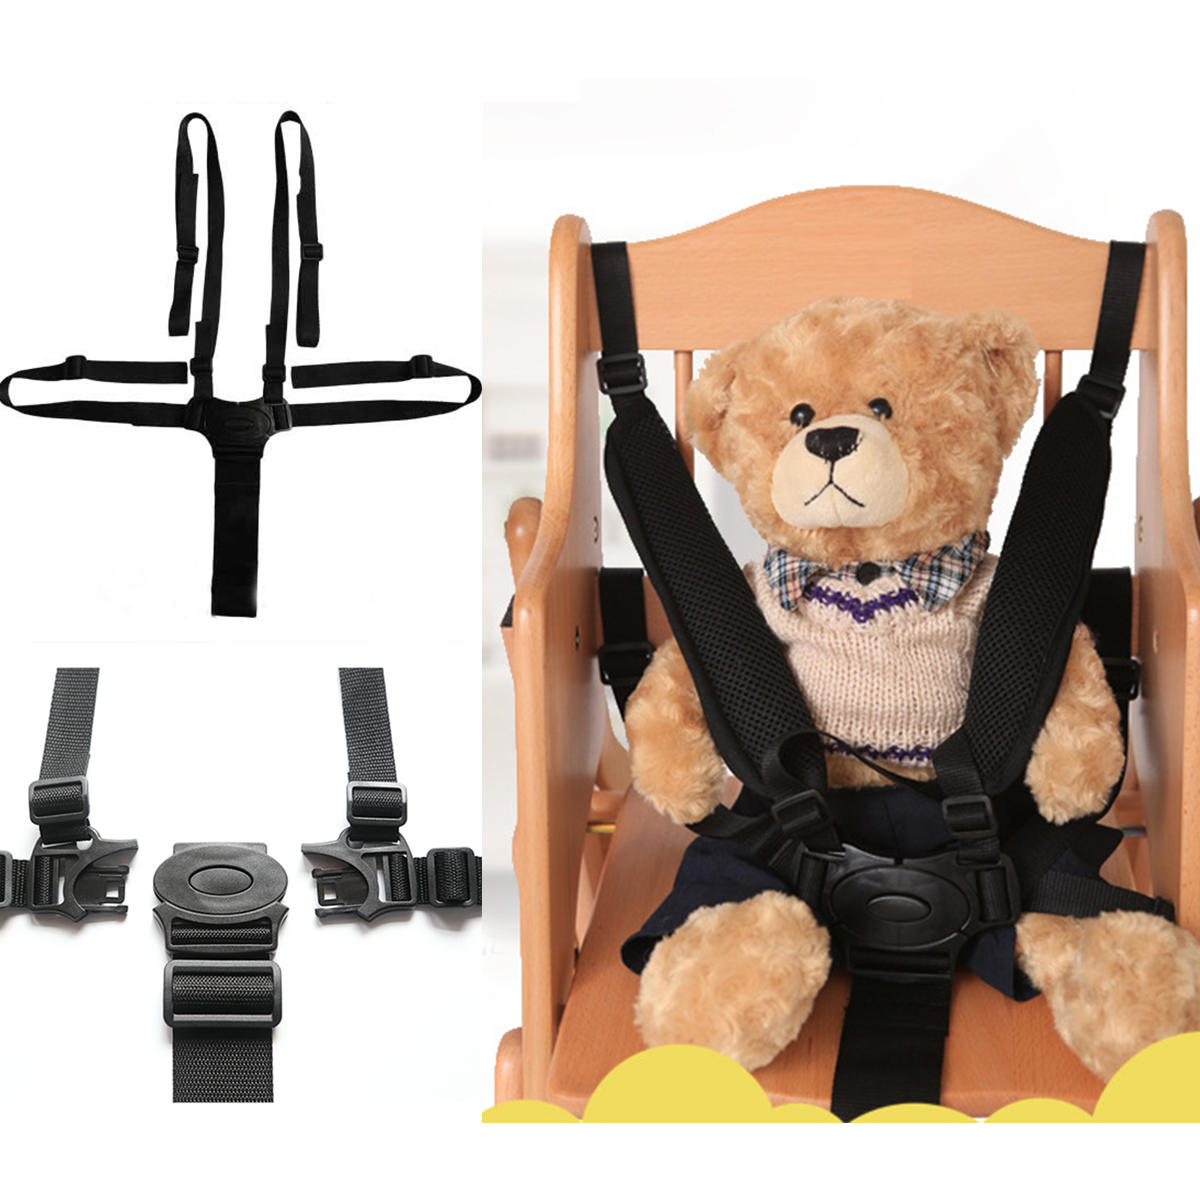 safety belt stroller